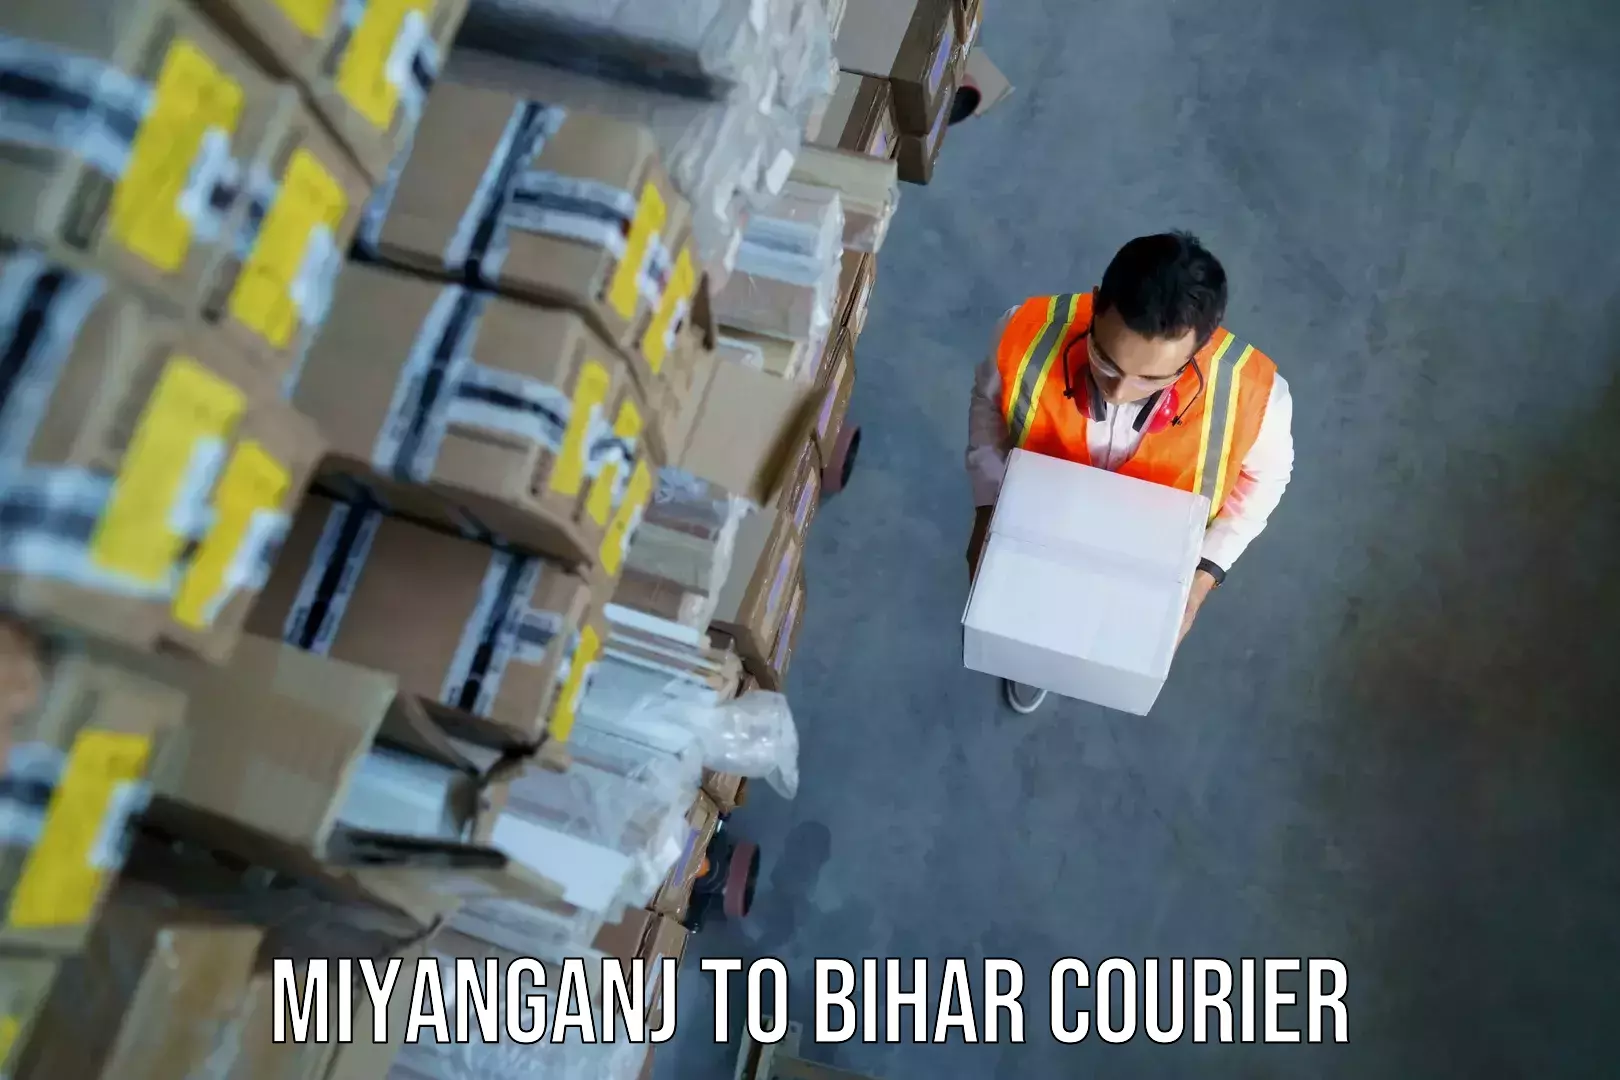 Baggage courier guide in Miyanganj to Bihar